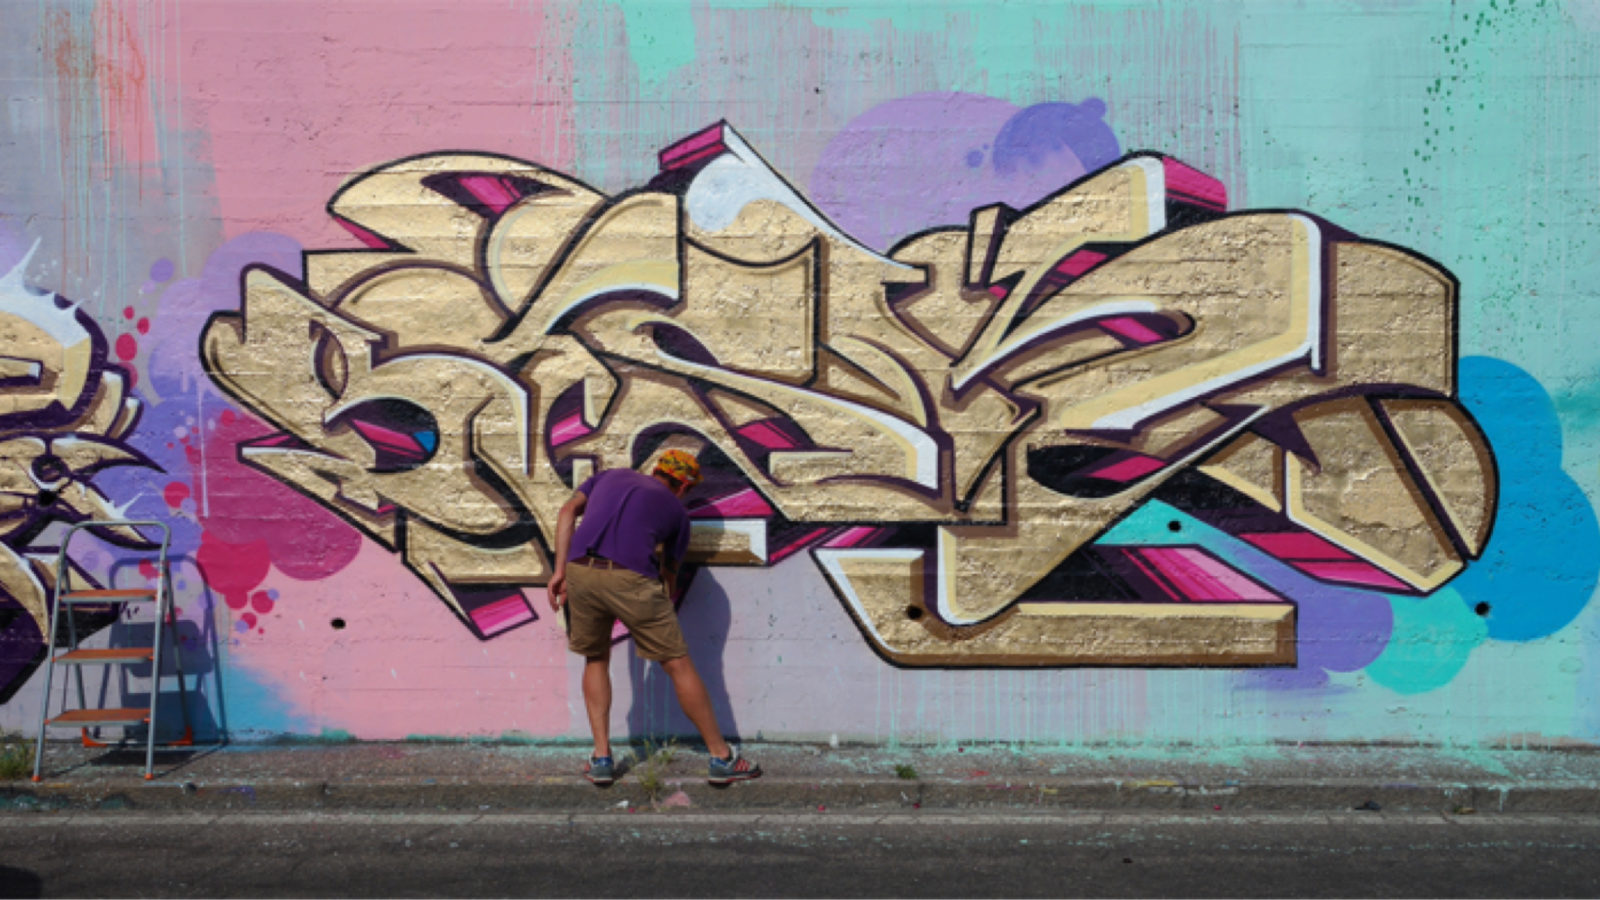 Intervista a Blef, leggenda italiana dei graffiti